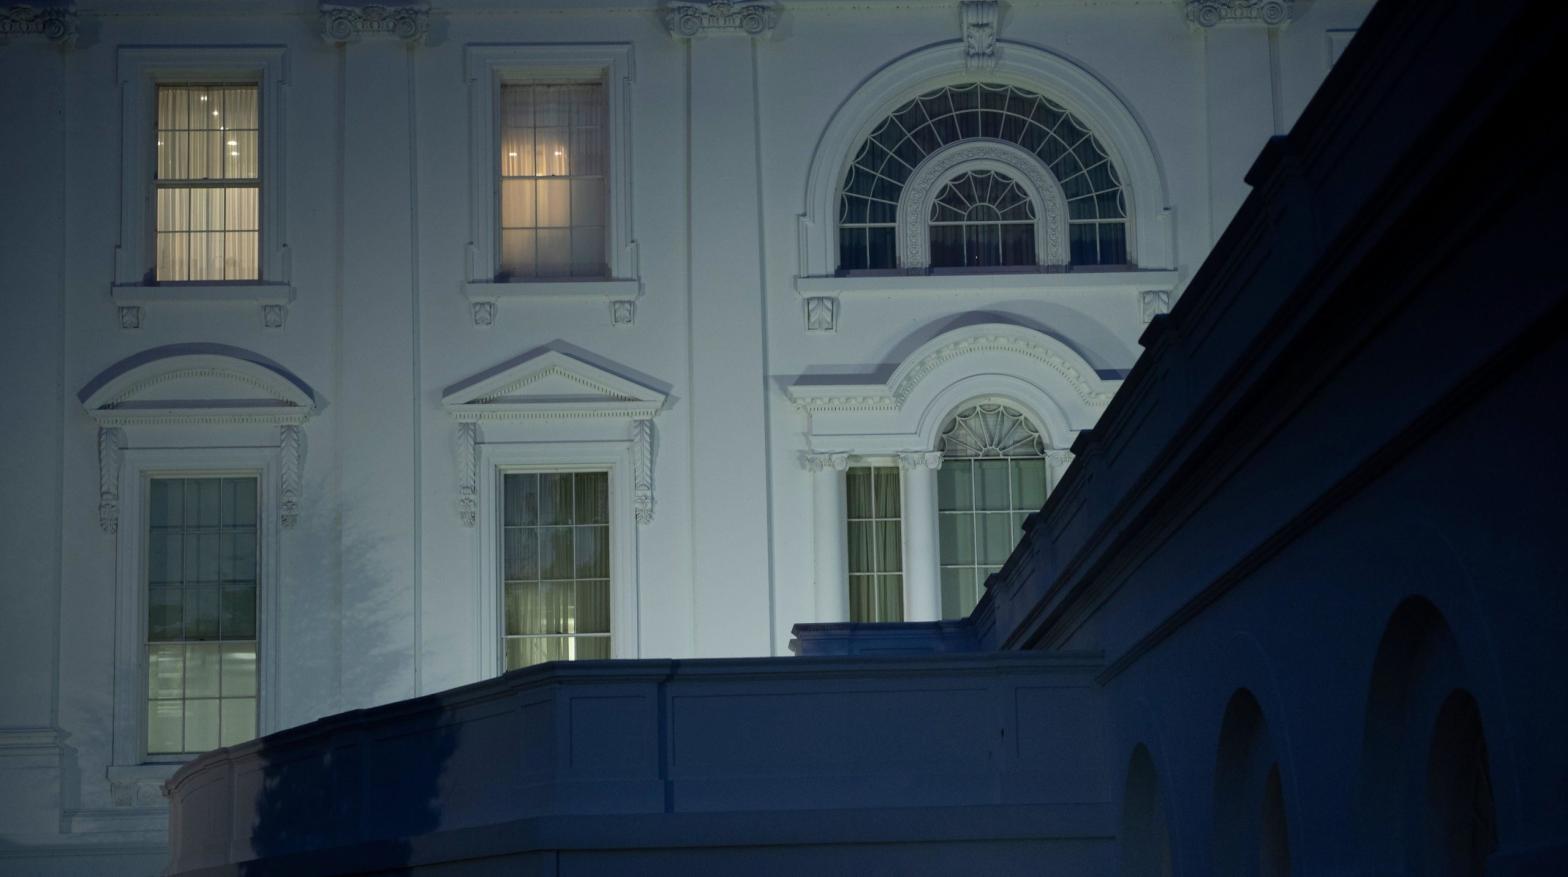 File photo of the White House on November 18, 2020, in Washington, D.C. (Photo: Brendan Smialowski, Getty Images)